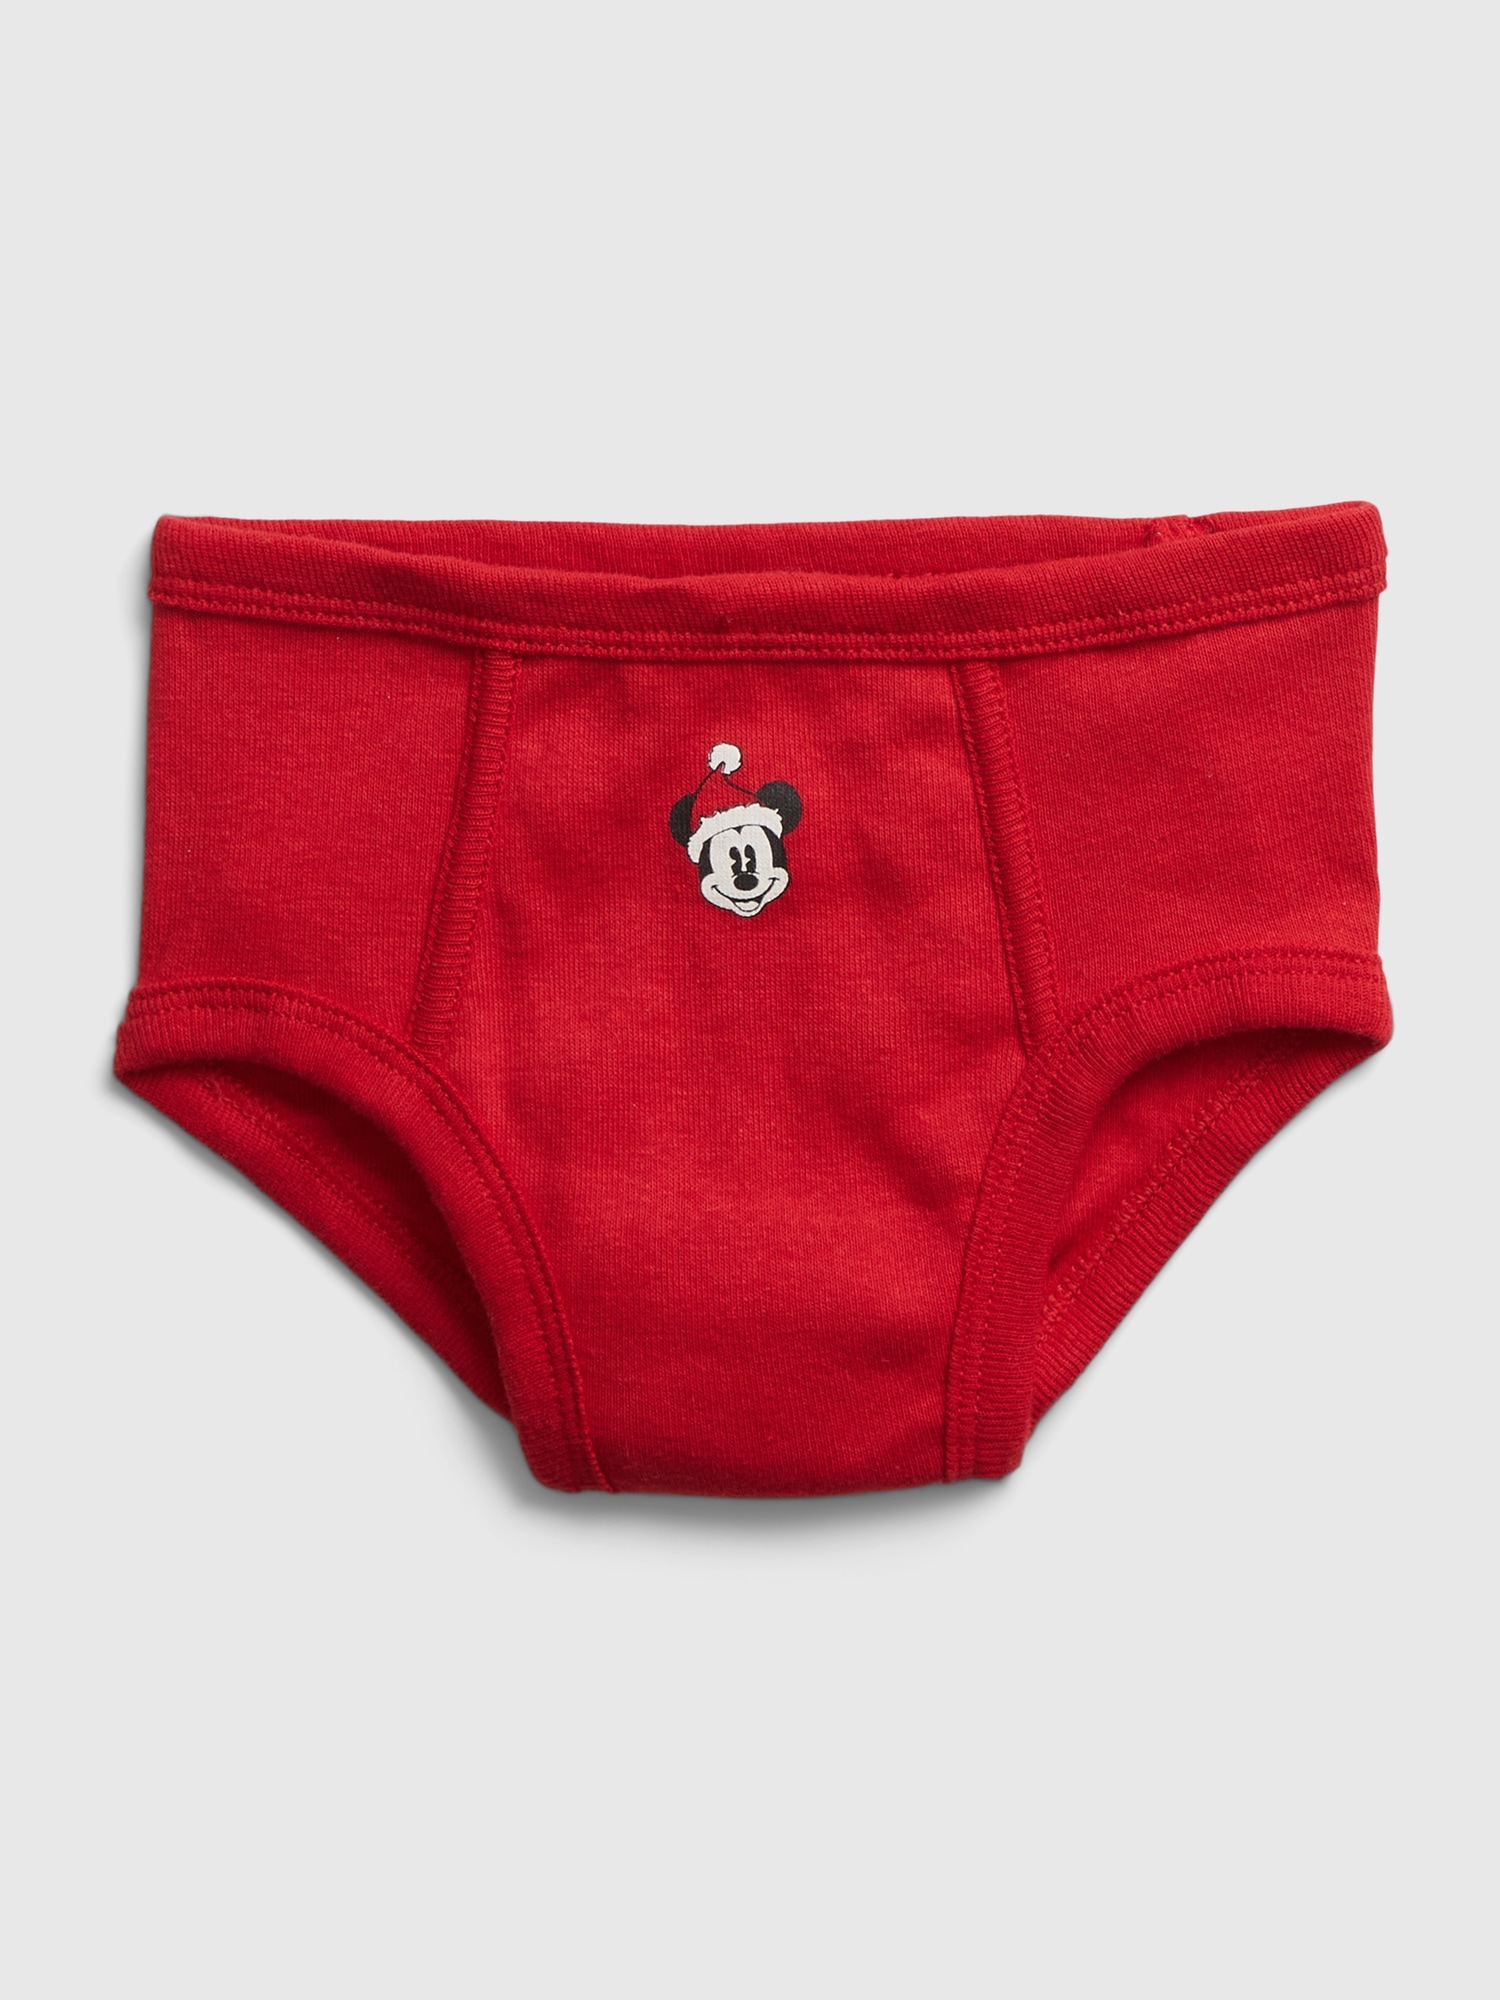 Disney Junior Mickey Mouse 3 Briefs Underwear 100% Cotton Size